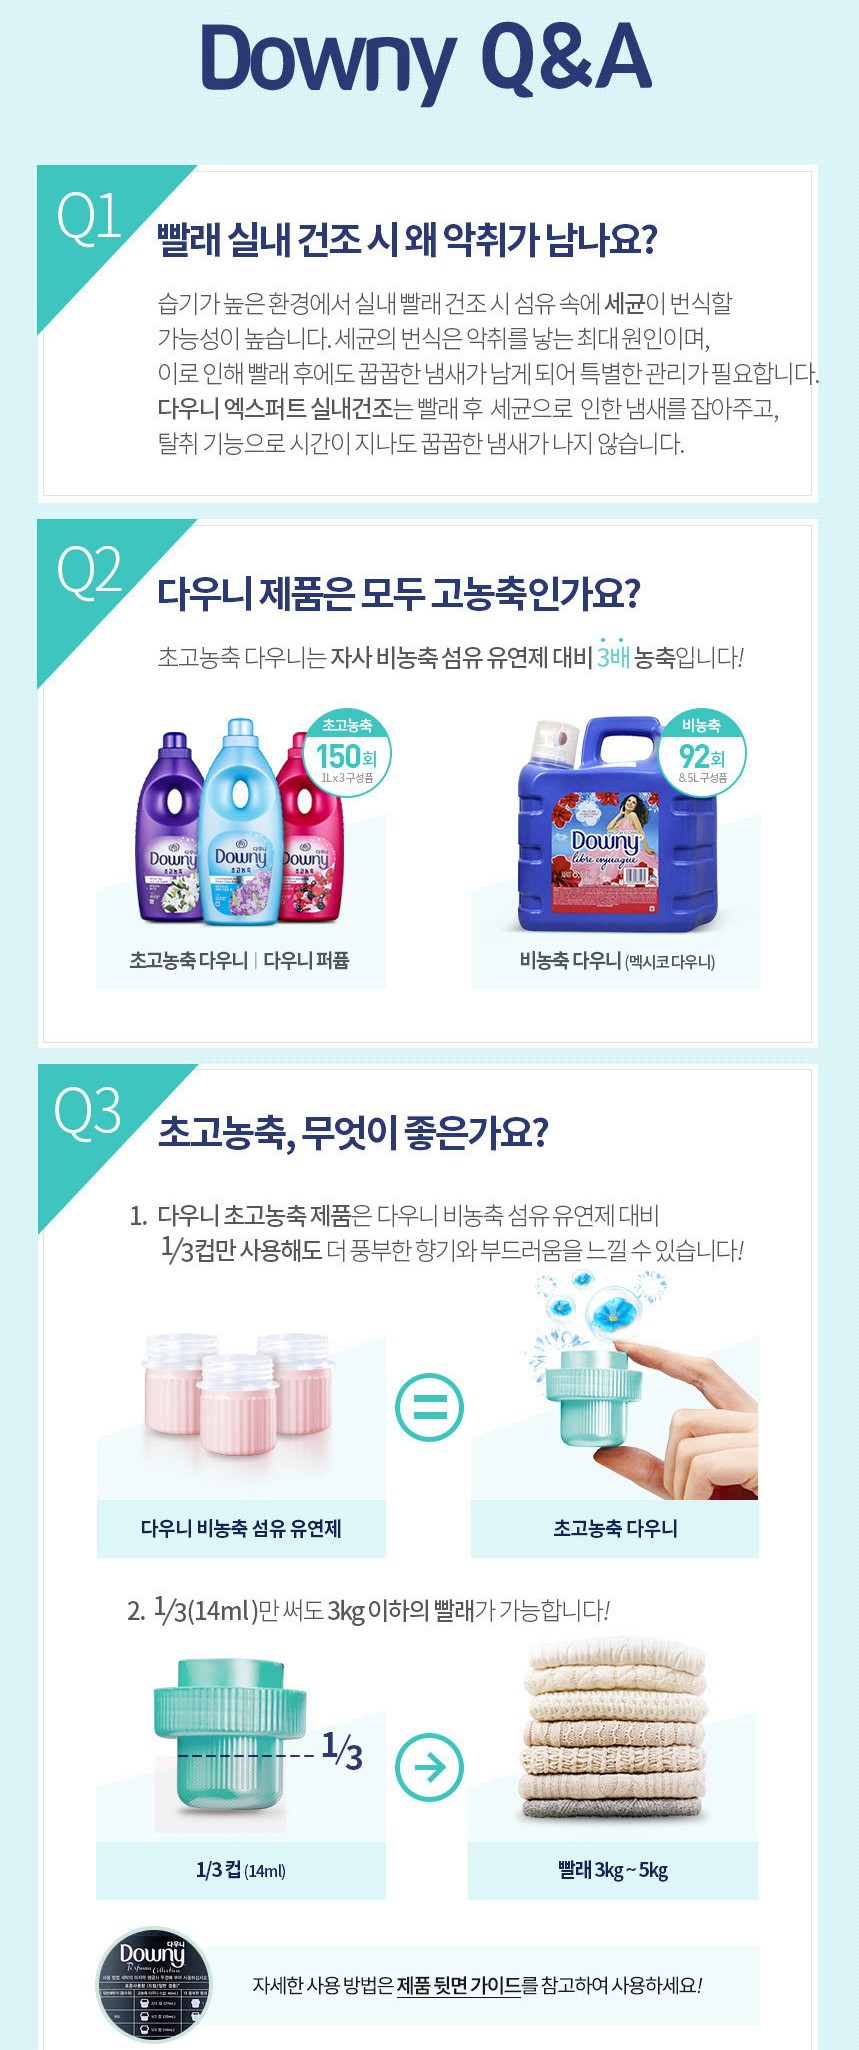 韓國食品-[Downy] 芳香衣物柔順劑 (室內乾燥 - 茉莉花香) 1L